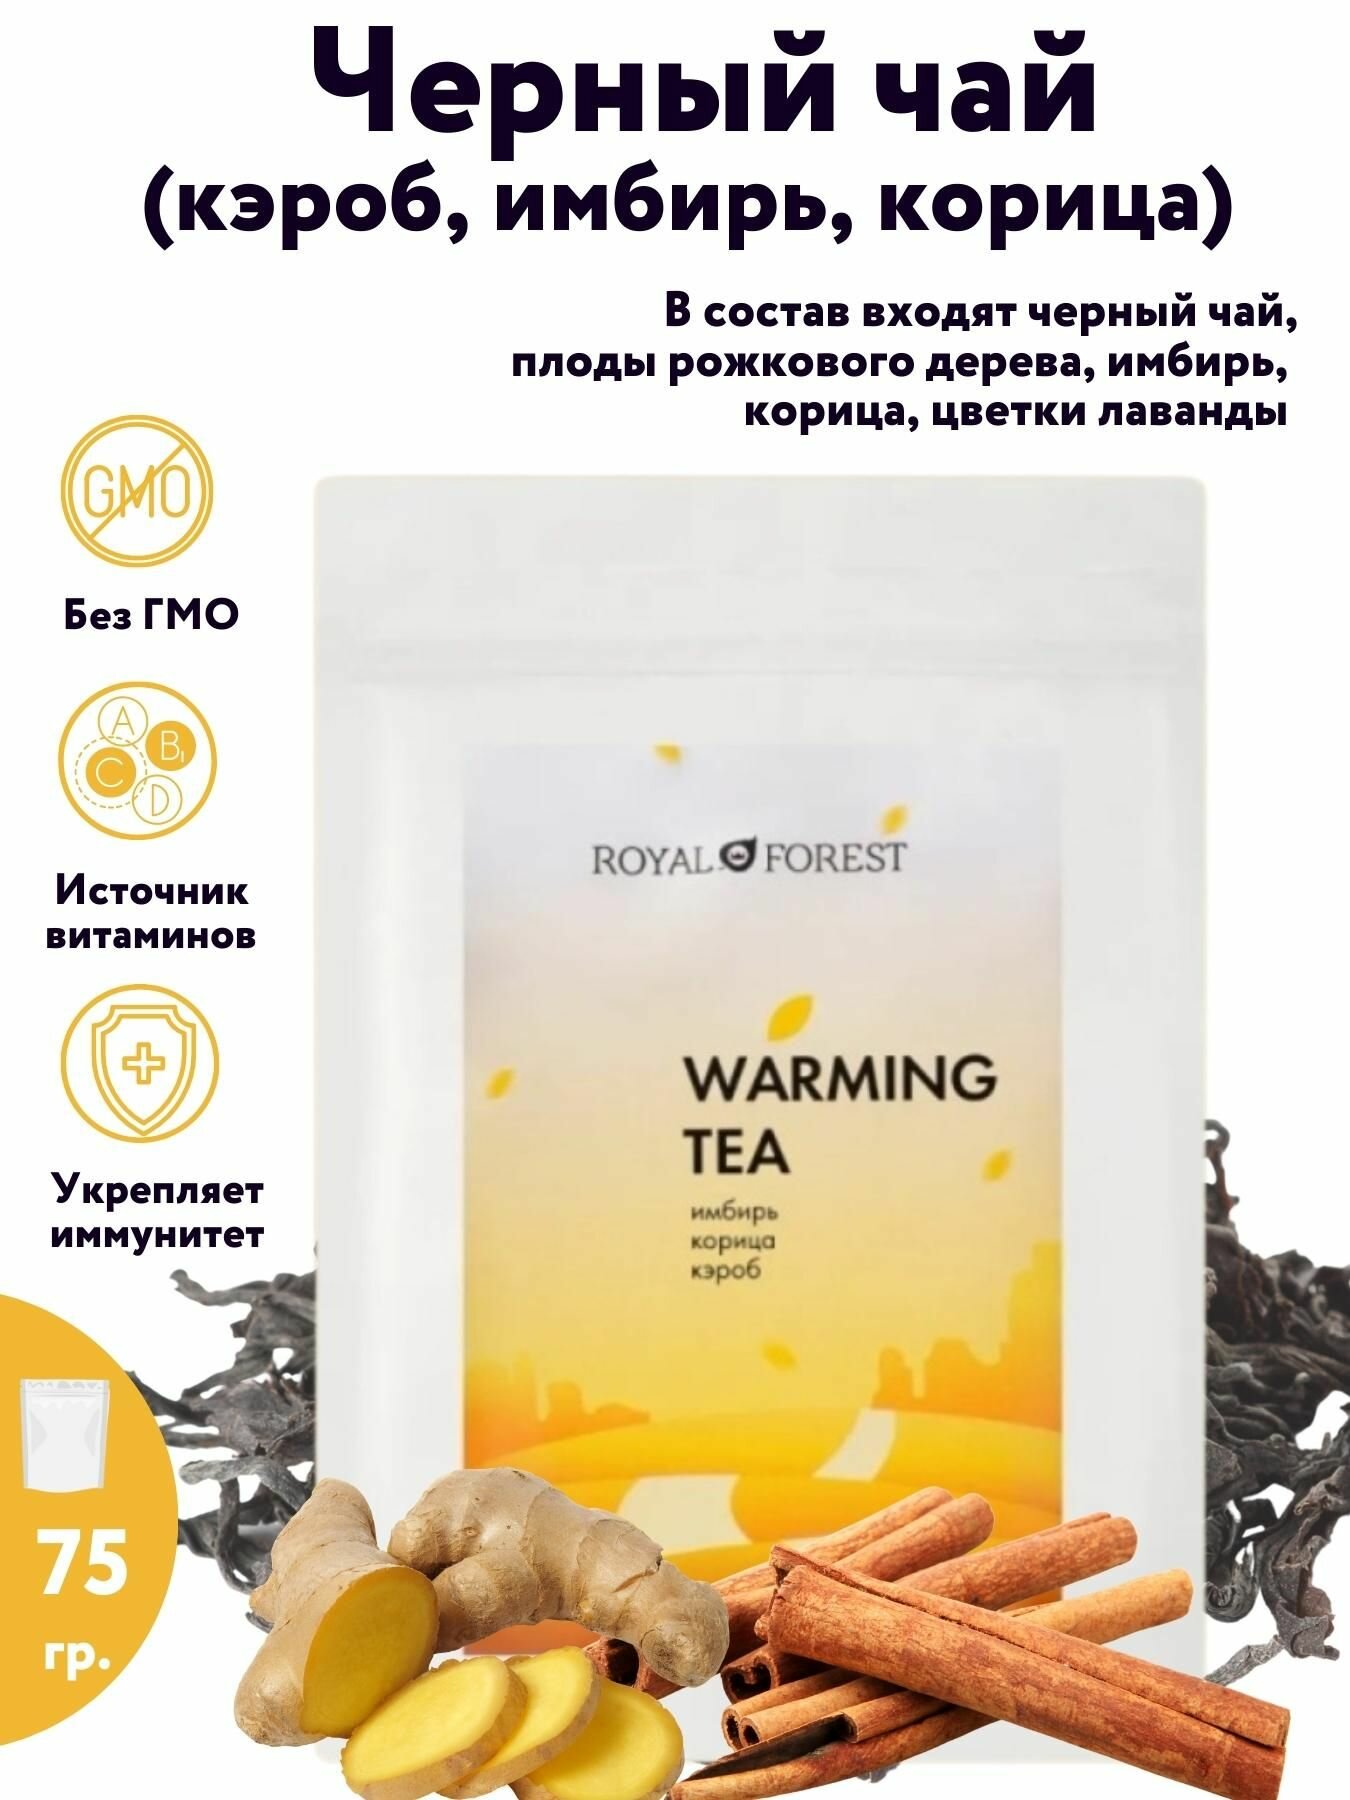 ROYAL FOREST/ Натуральный черный листовой чай (кэроб, корица, имбирь), 75 гр.